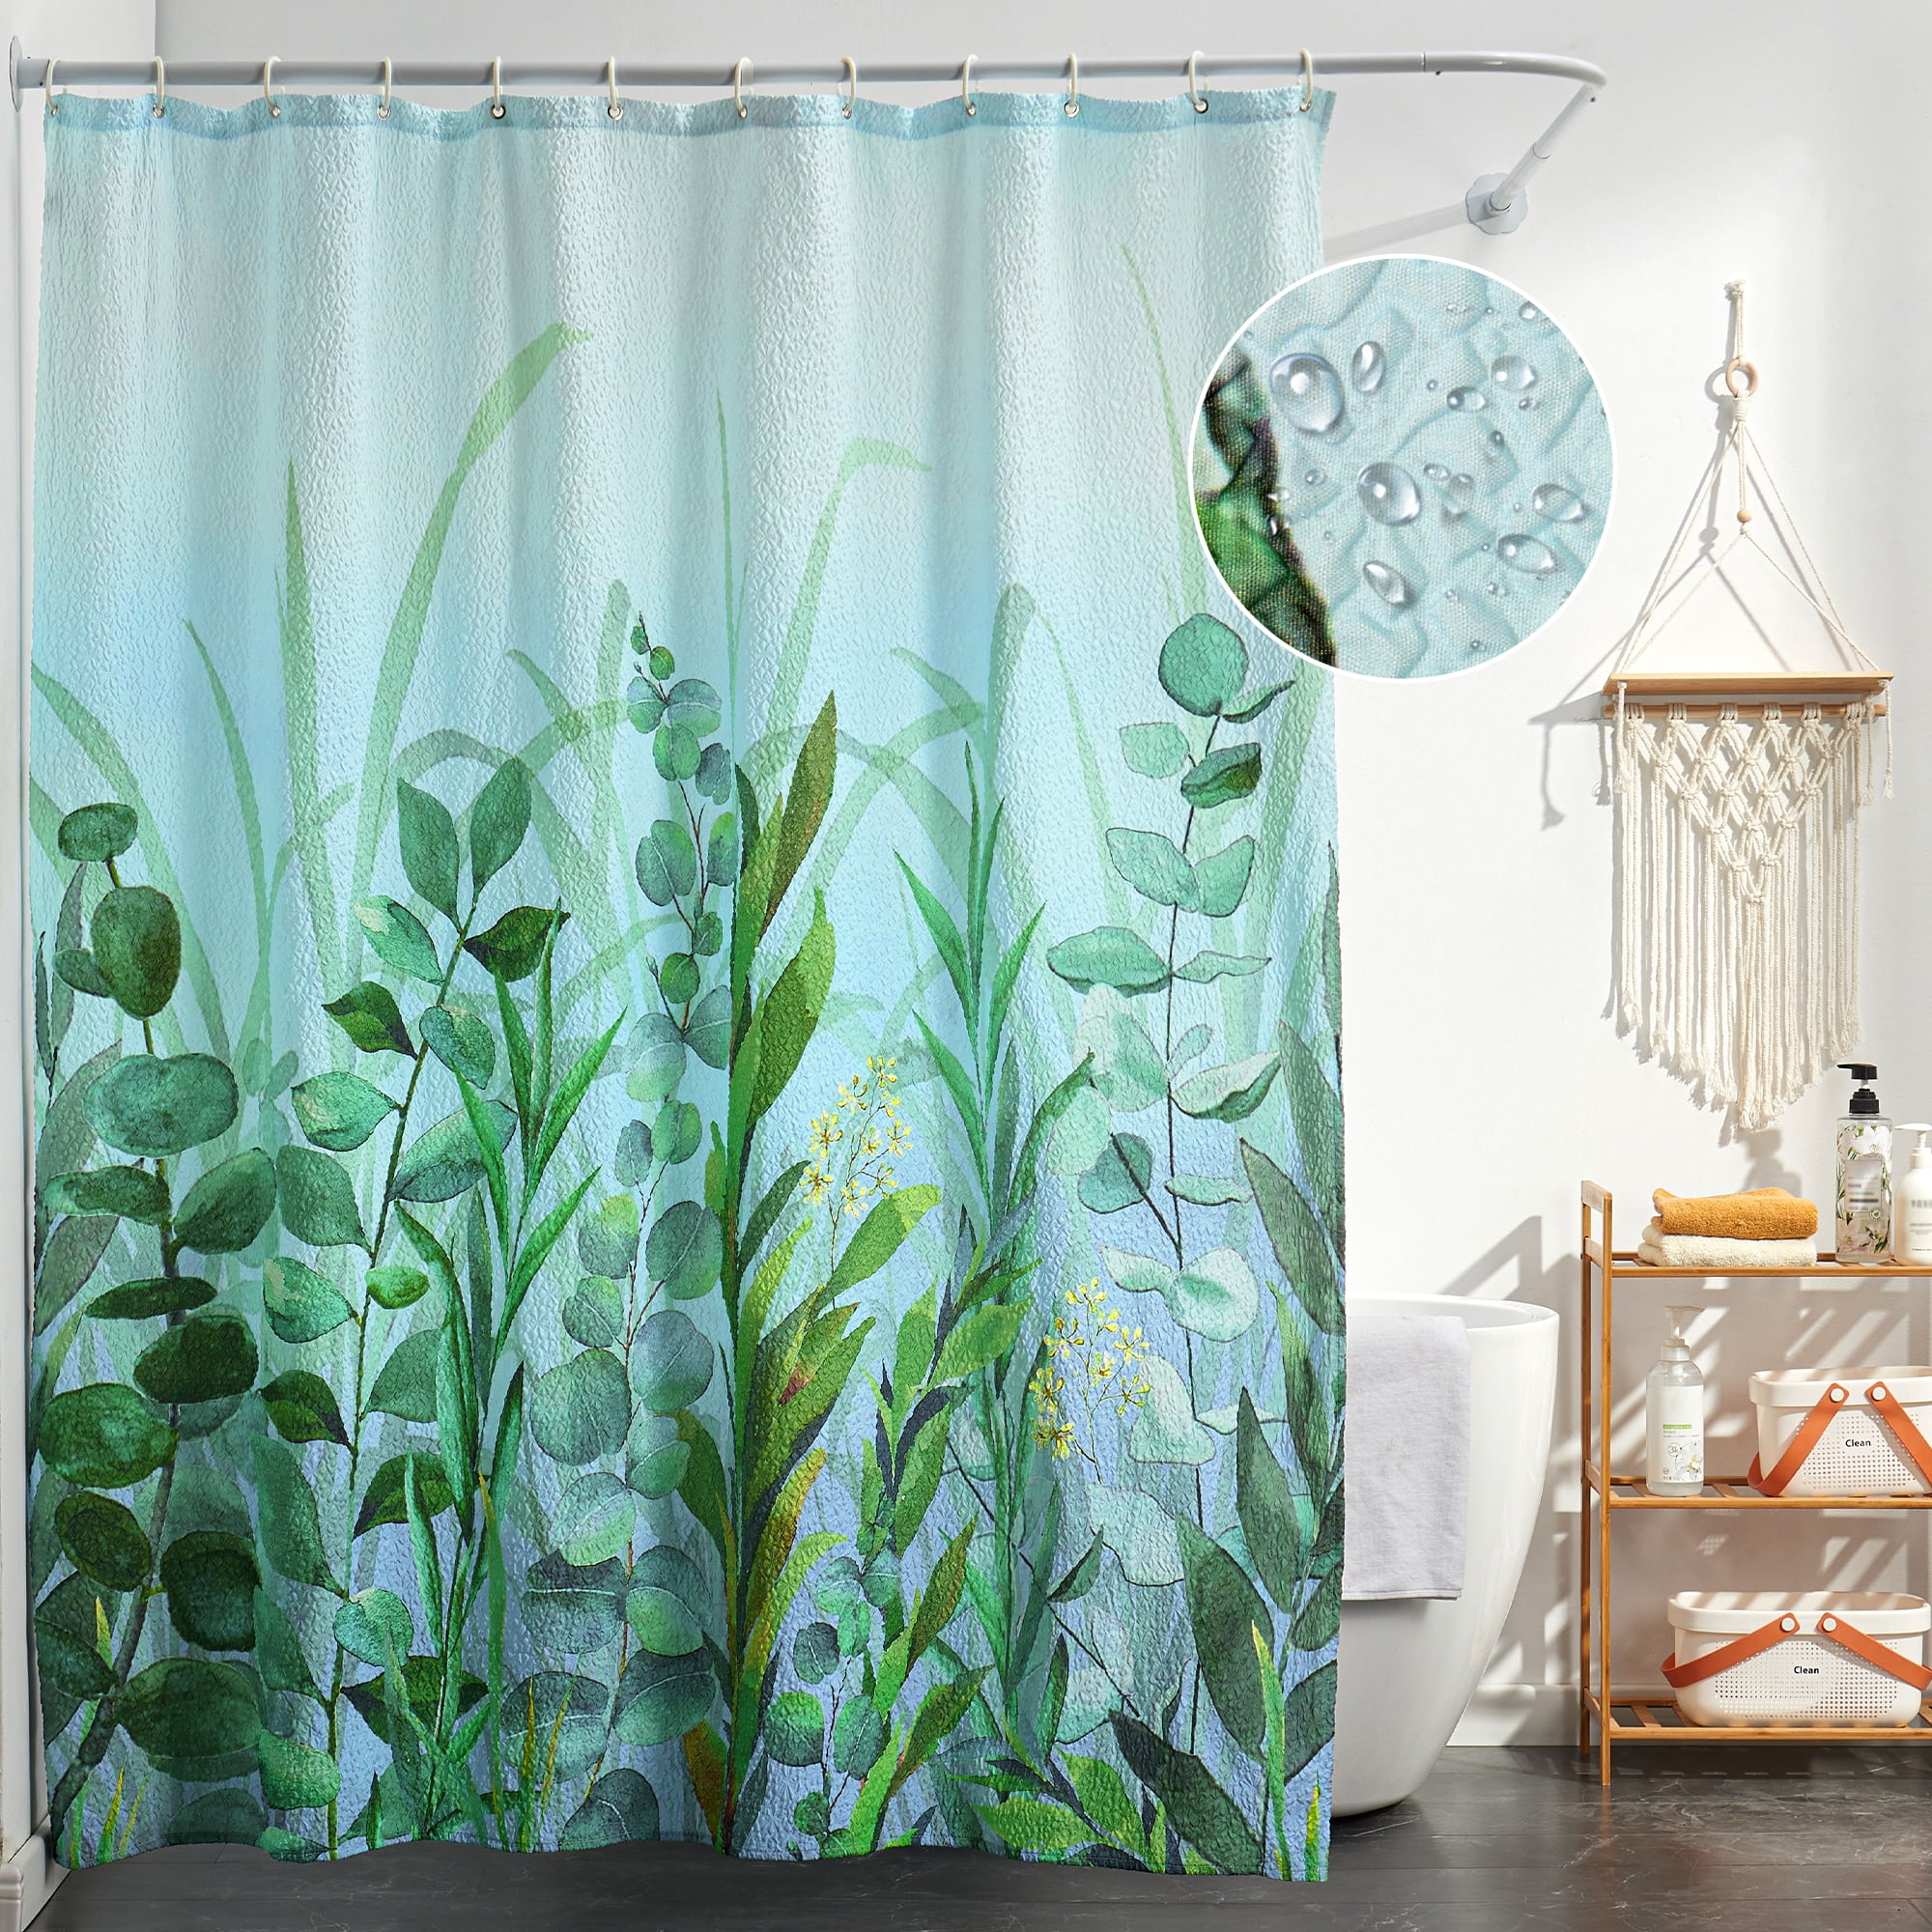 Alligator Alligator Shower Curtain Waterproof Shower Curtain